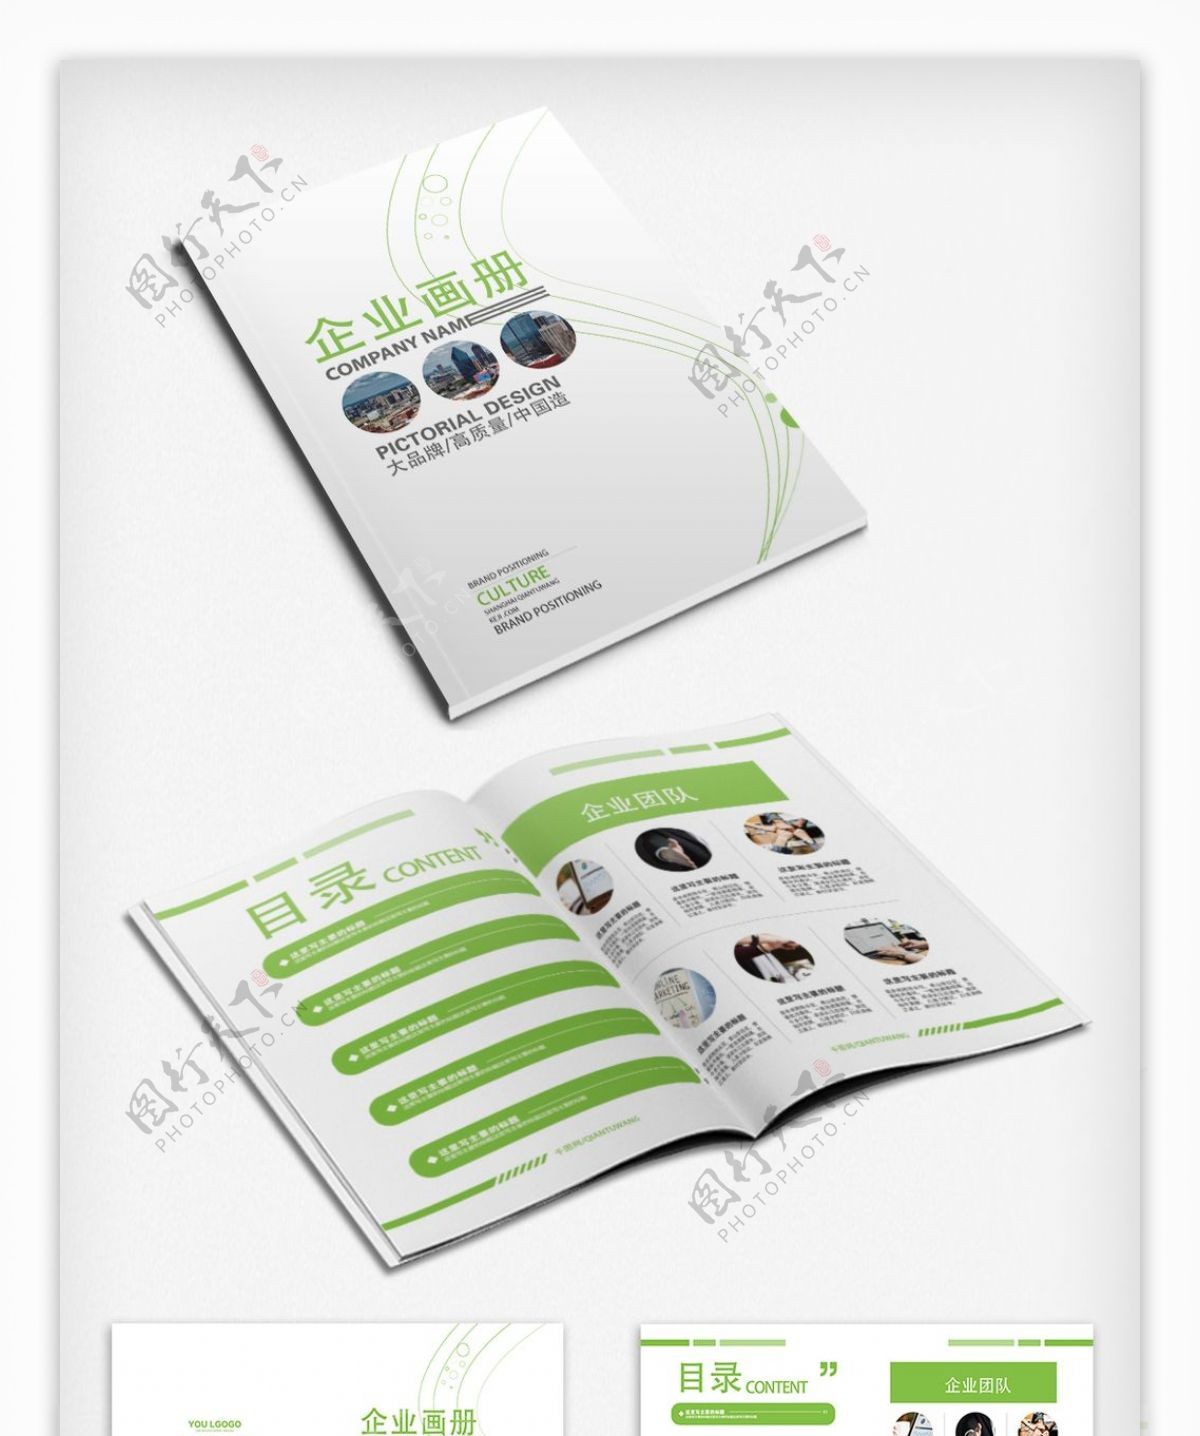 大气绿色企业画册公司宣传册设计